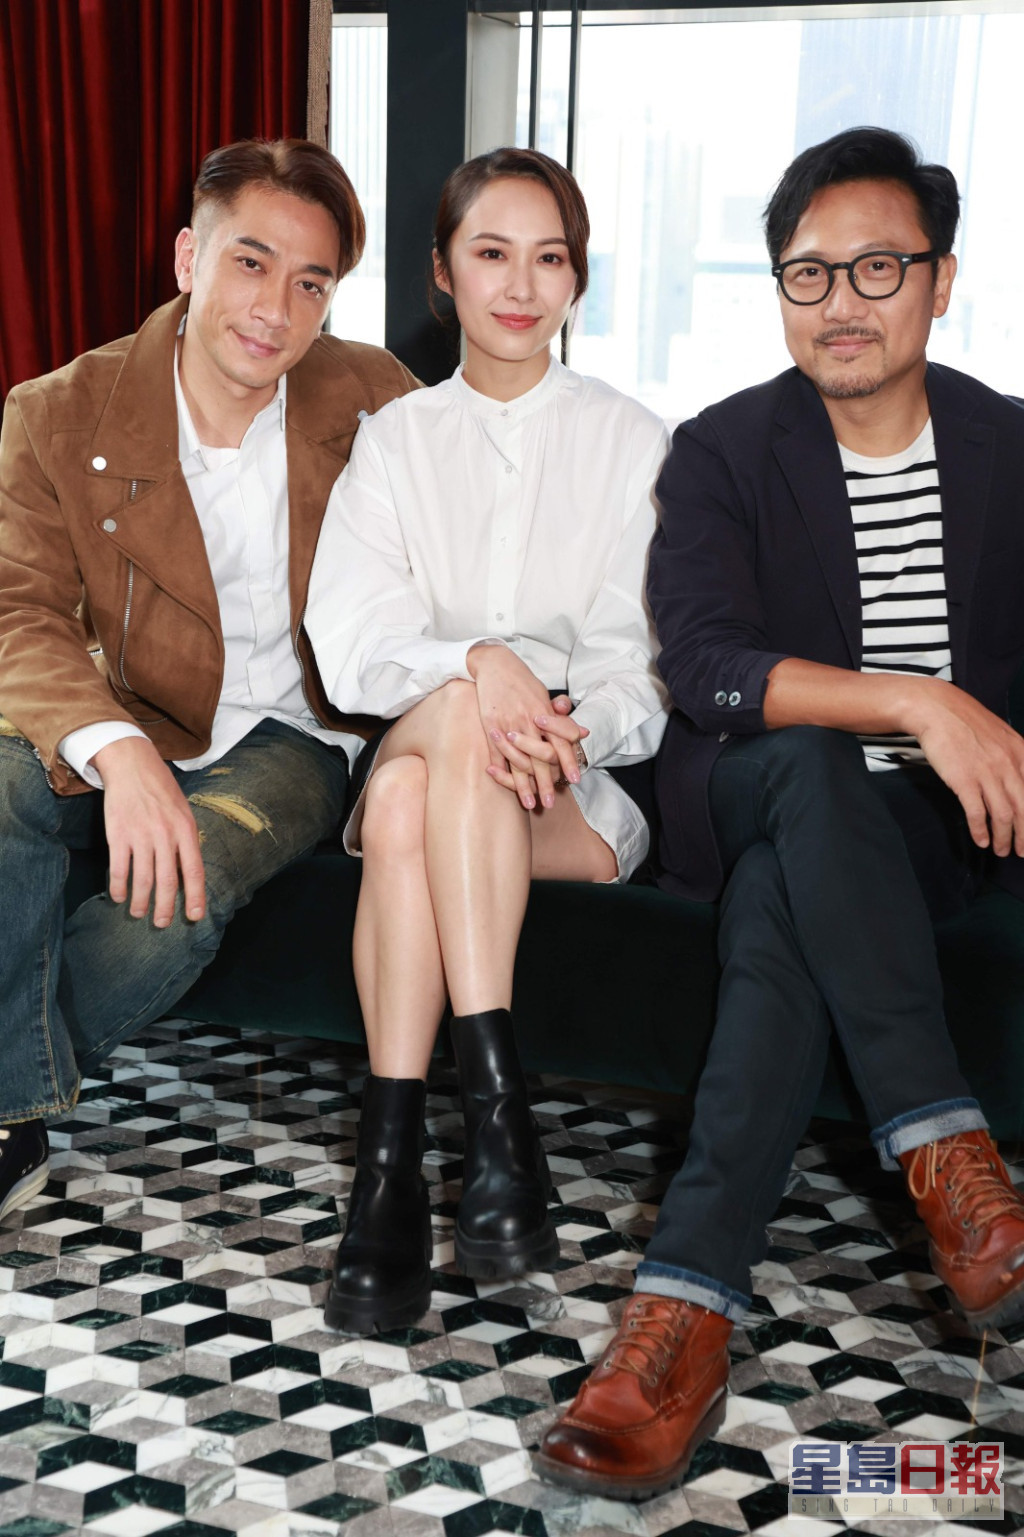 湯怡、吳卓羲和潘燦良合作演出英皇電影《致命24小時》。